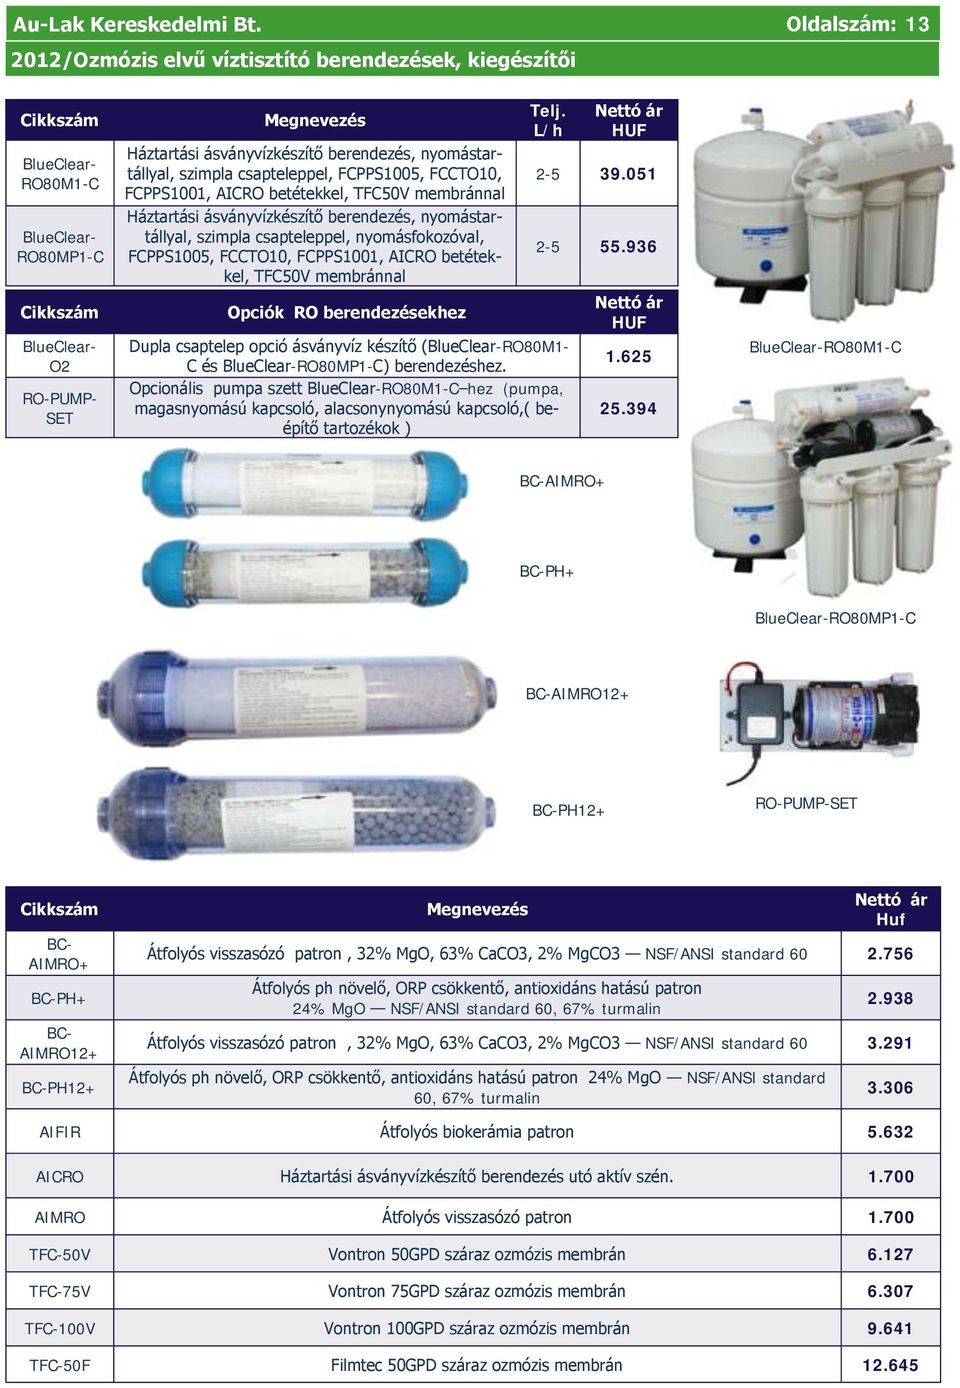 Opcionális pumpa szett BlueClear-RO80M1-C hez (pumpa, magasnyomású kapcsoló, alacsonynyomású kapcsoló,( beépítő tartozékok ) RO-PUMP- SET Háztartási ásványvízkészítő berendezés, nyomástartállyal,